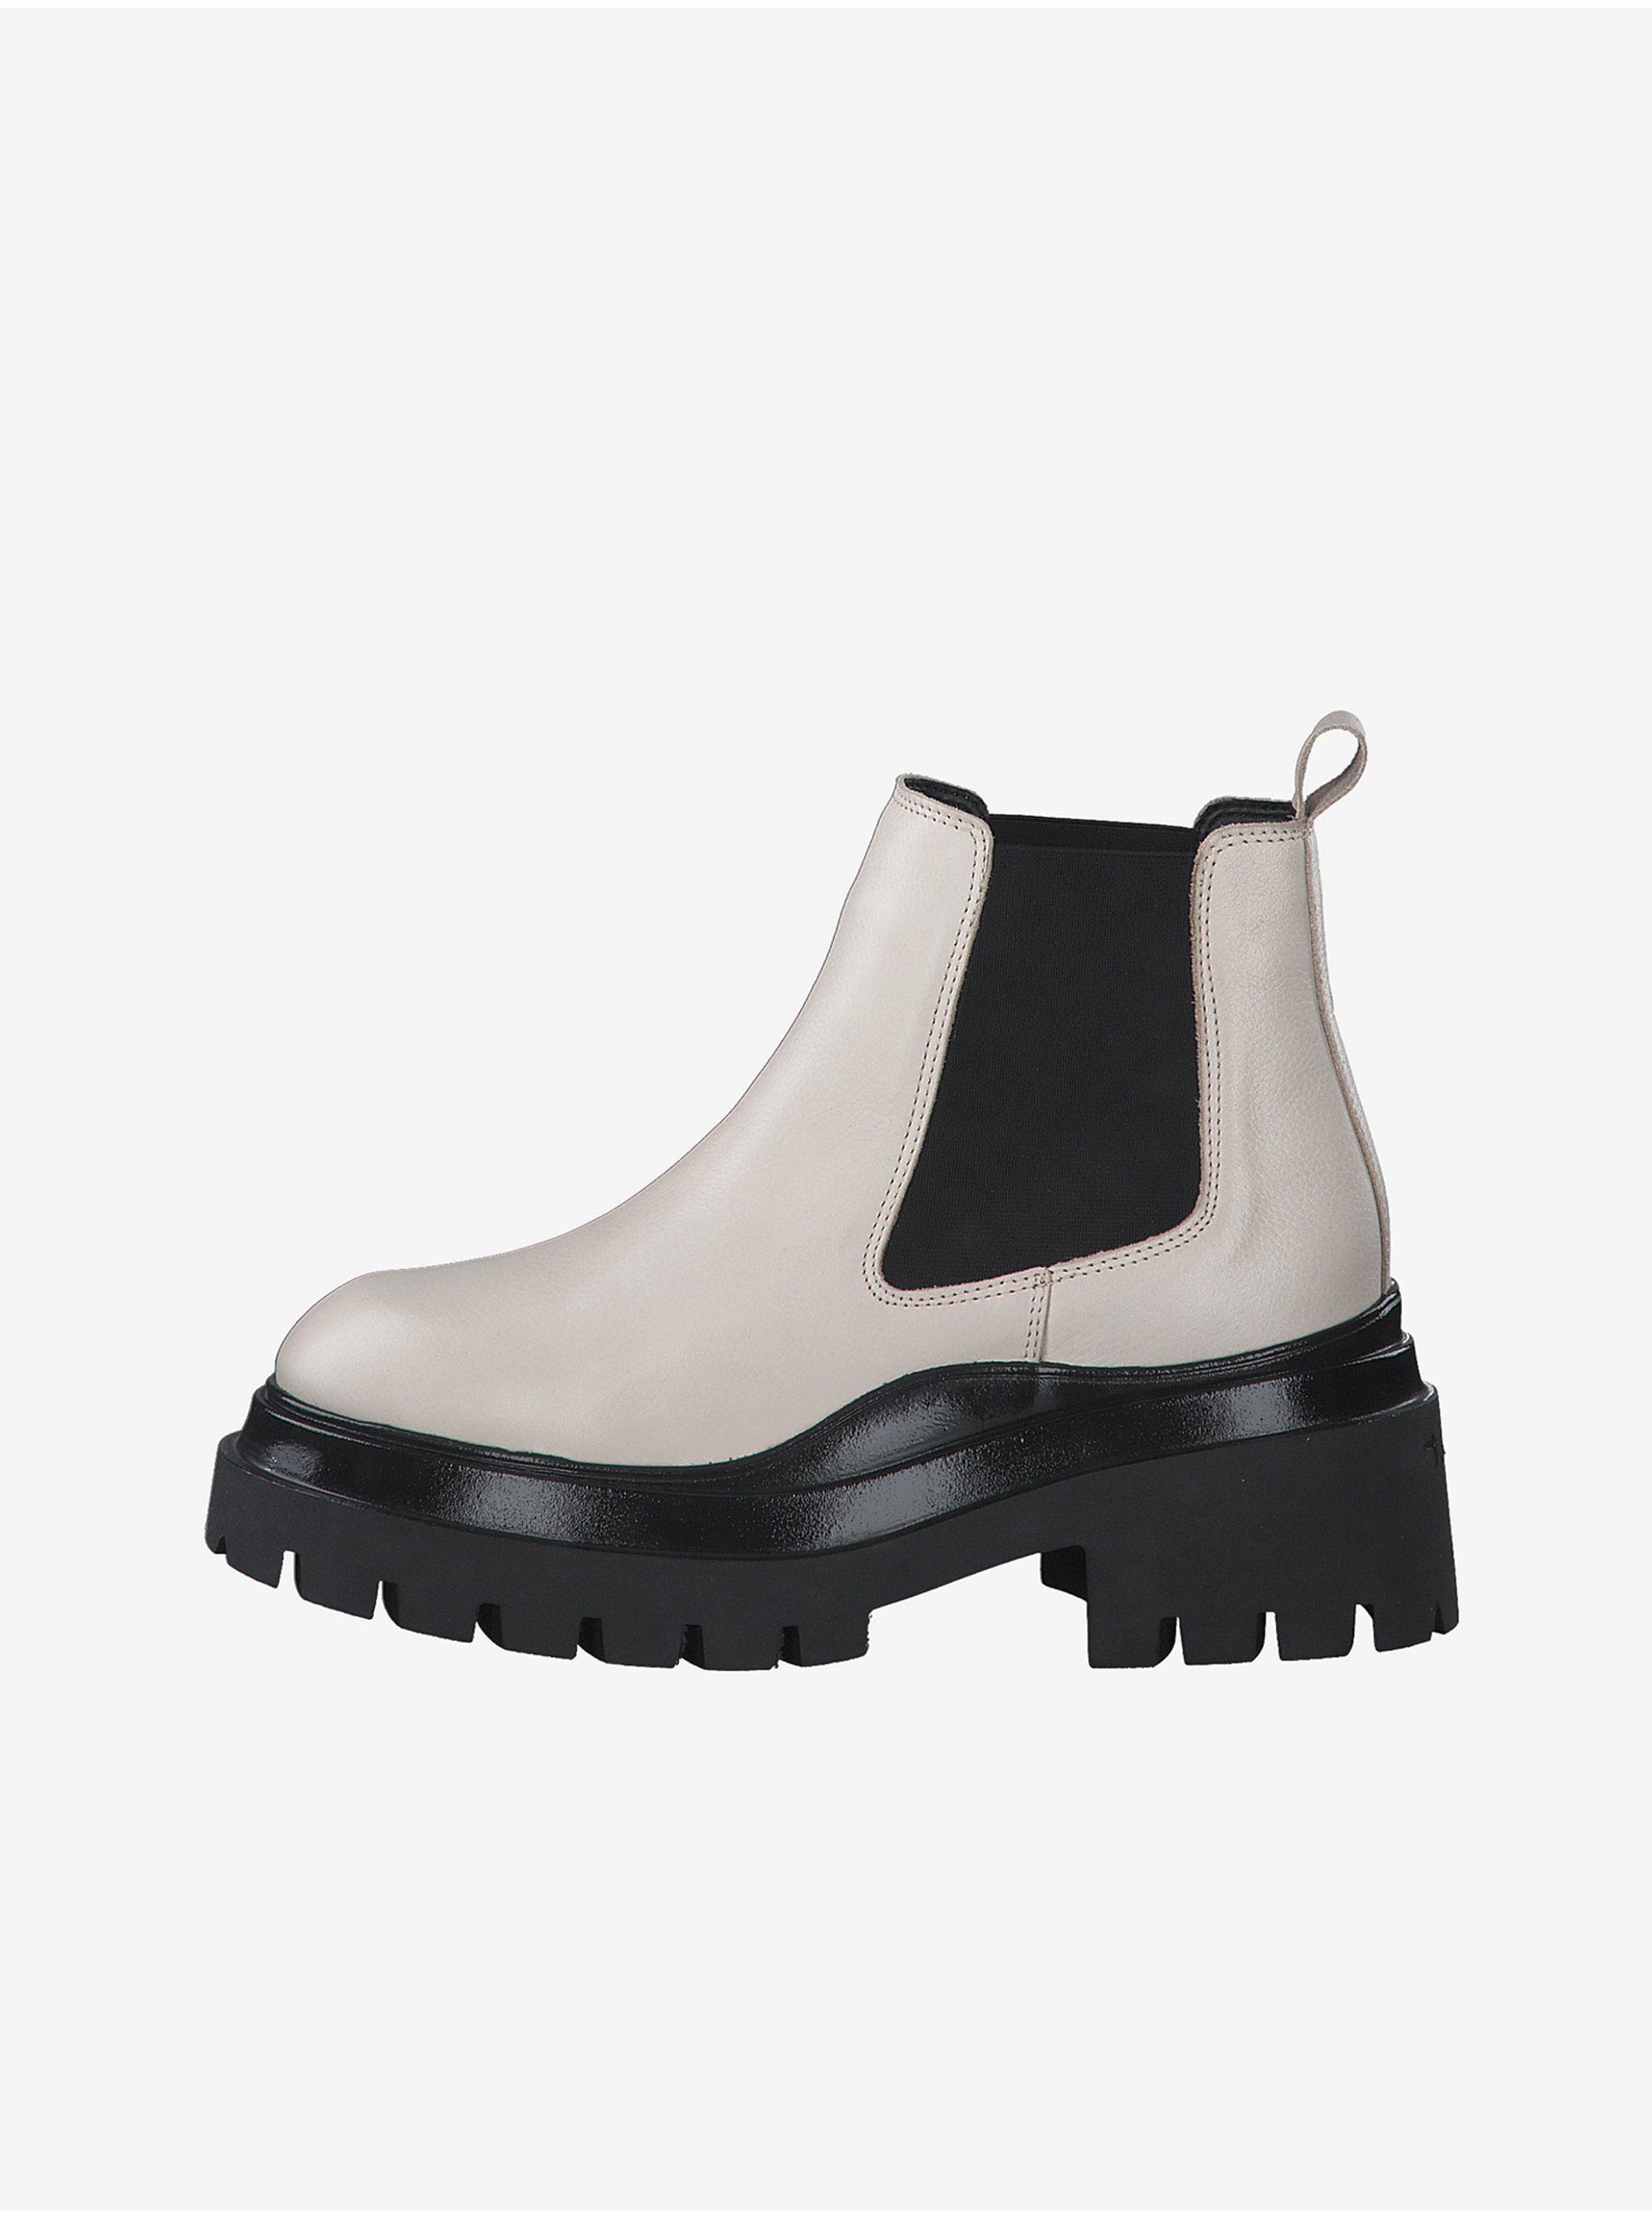 E-shop Čierno-krémové kožené členkové topánky na podpätku Tamaris